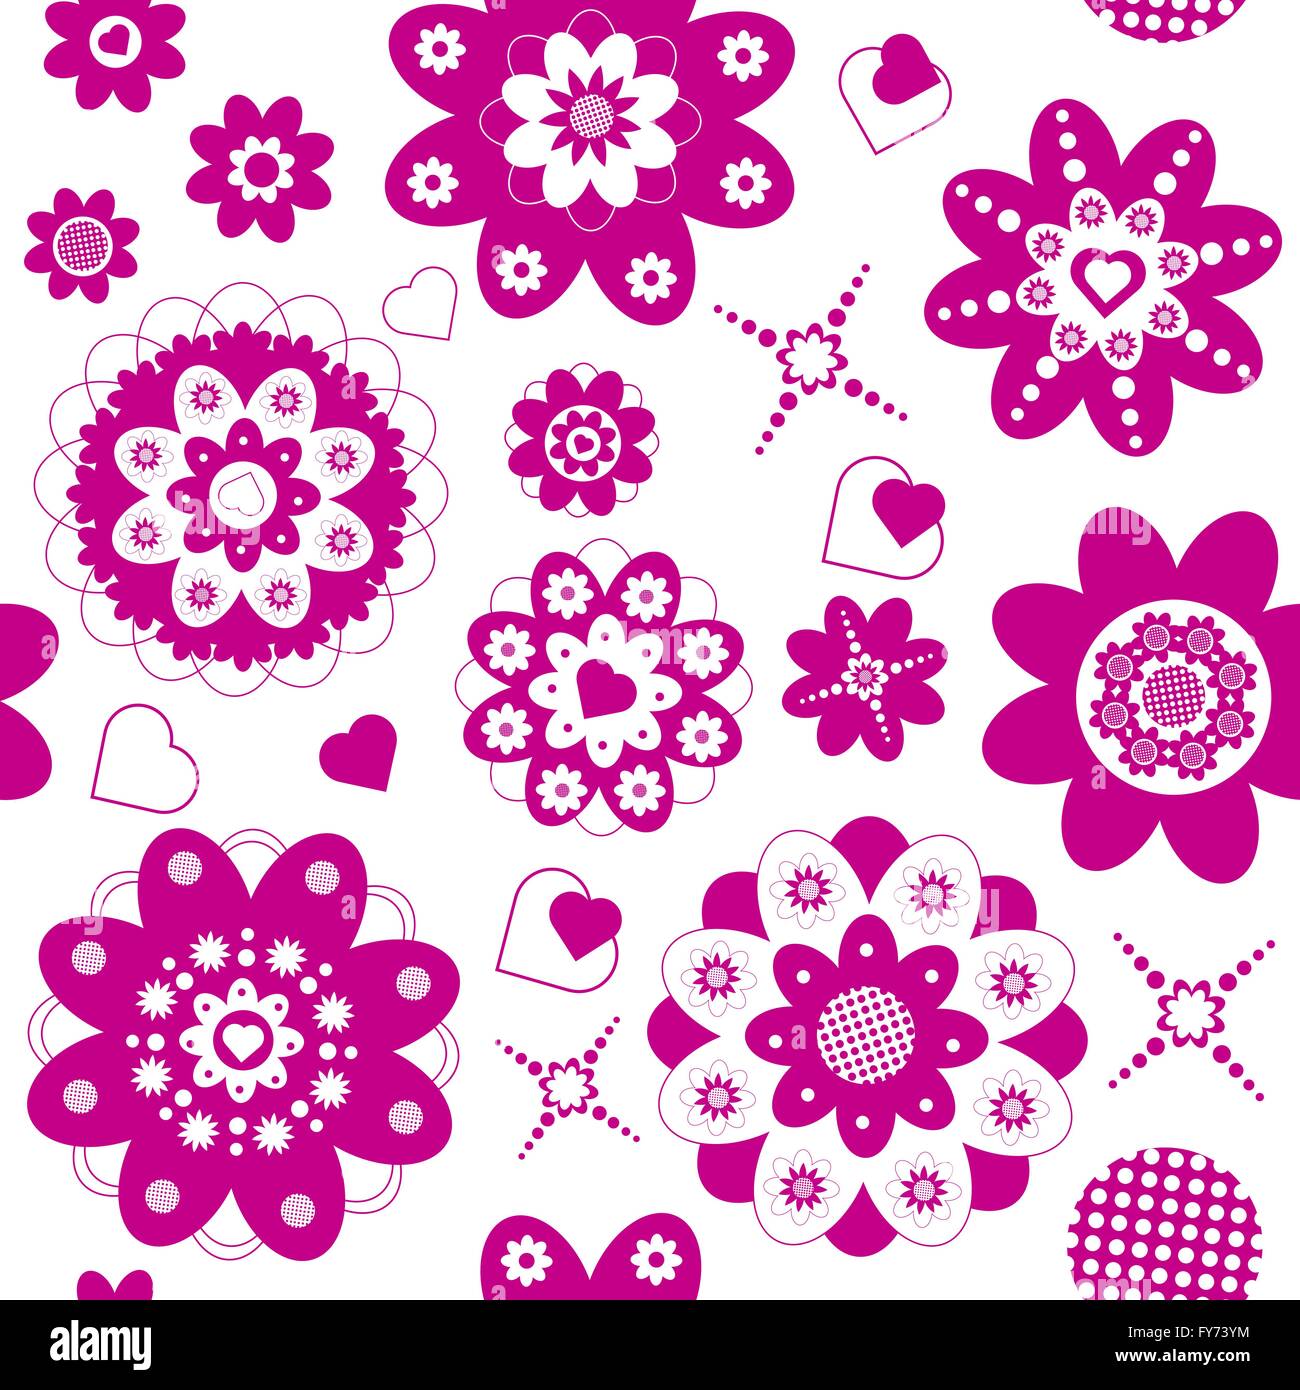 Rosa Blumen und Herzen nahtlos, die geschnittenen Formen in einer Weise organisiert sind, enthält die Abbildung eine rosa Farbe, Eps 8, Stock Vektor